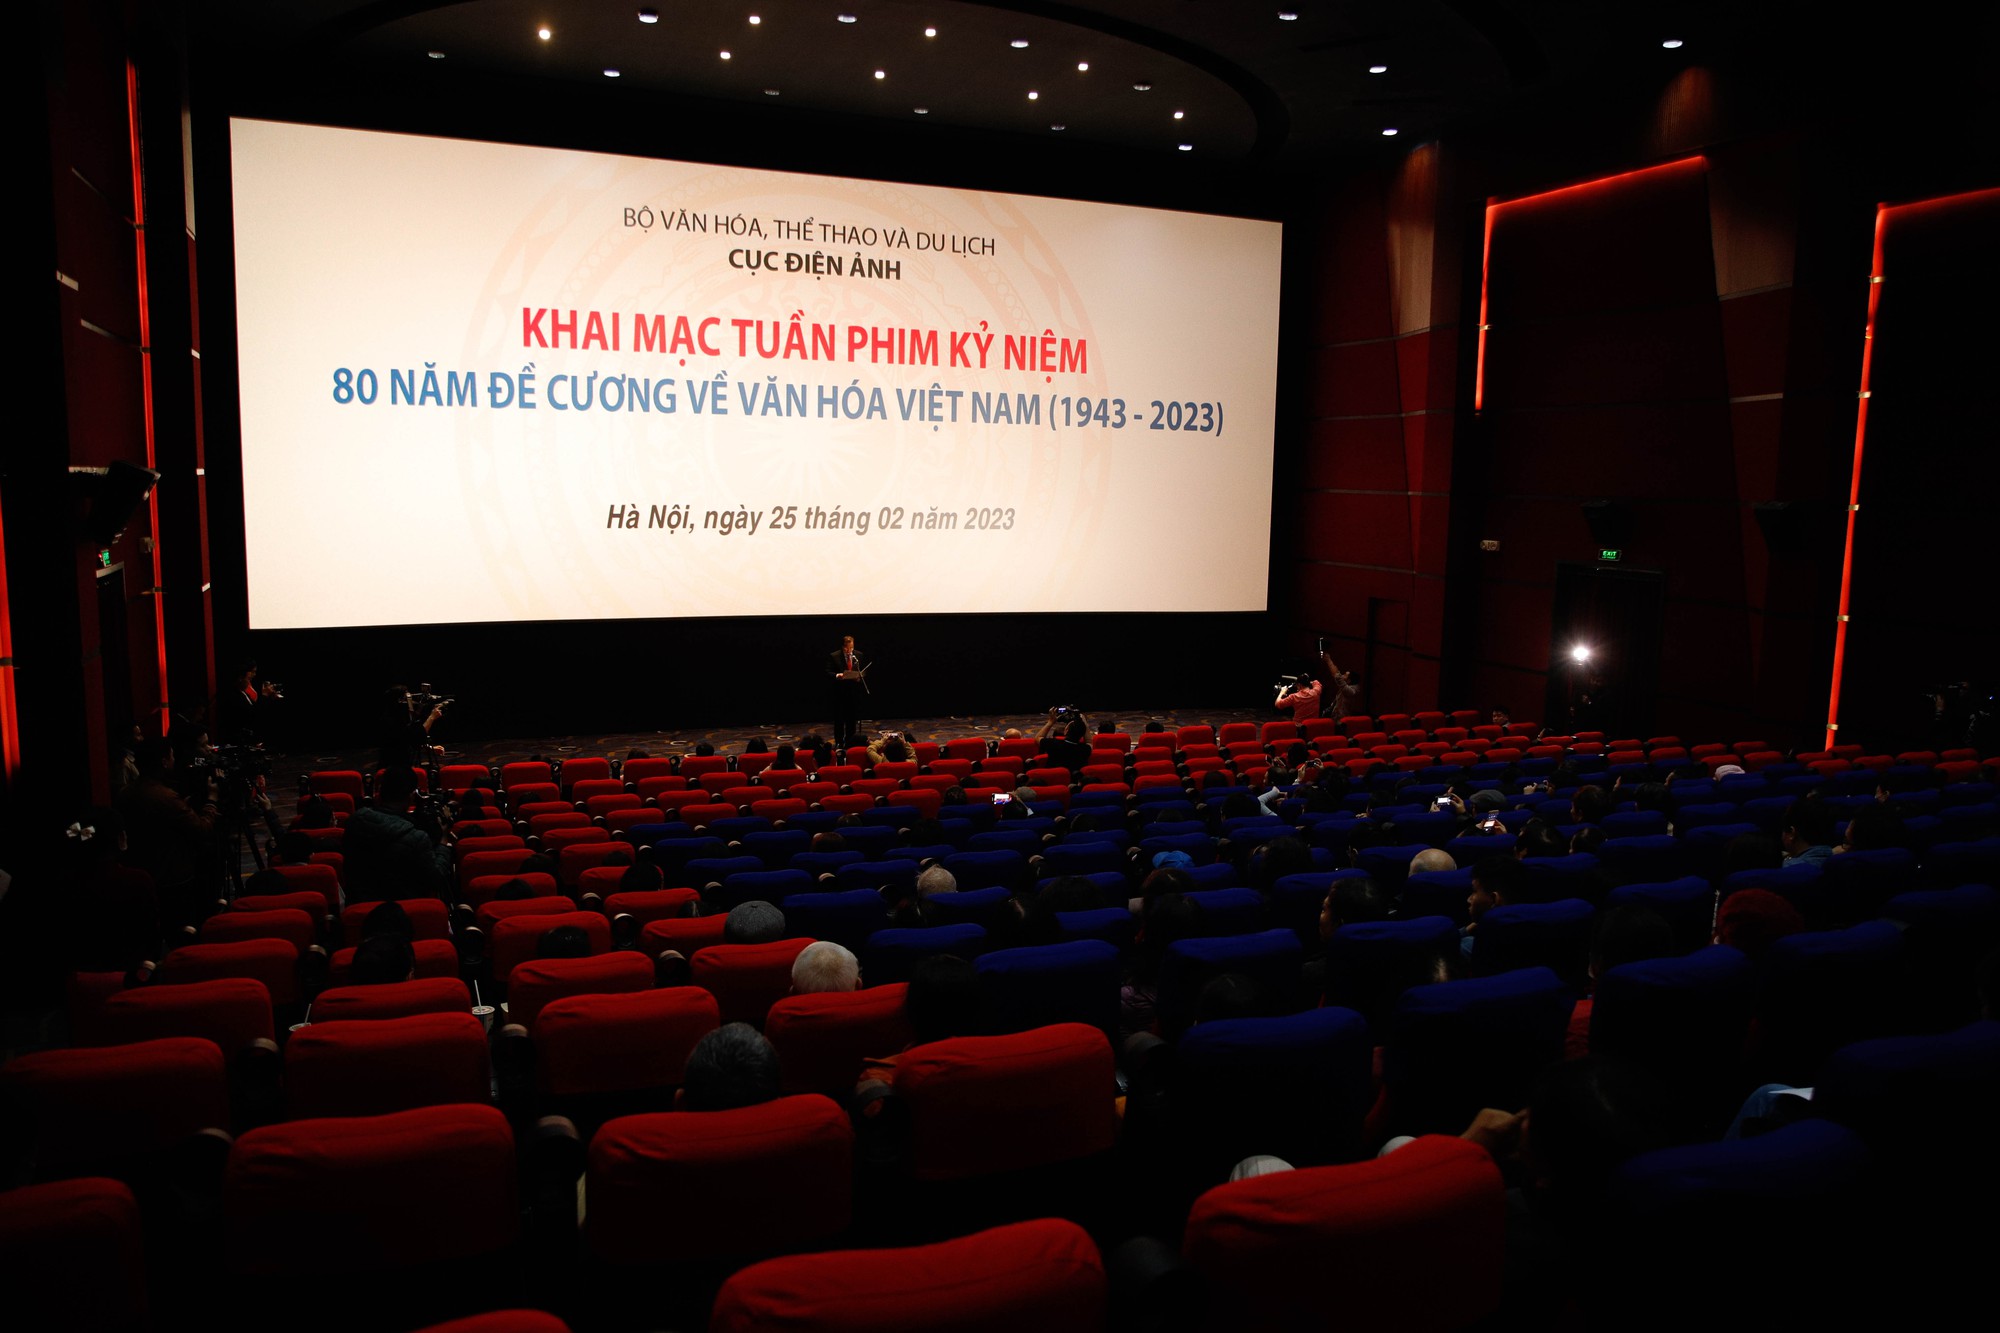 Khai mạc tuần phim kỷ niệm 80 năm Đề cương về văn hóa Việt Nam - Ảnh 1.